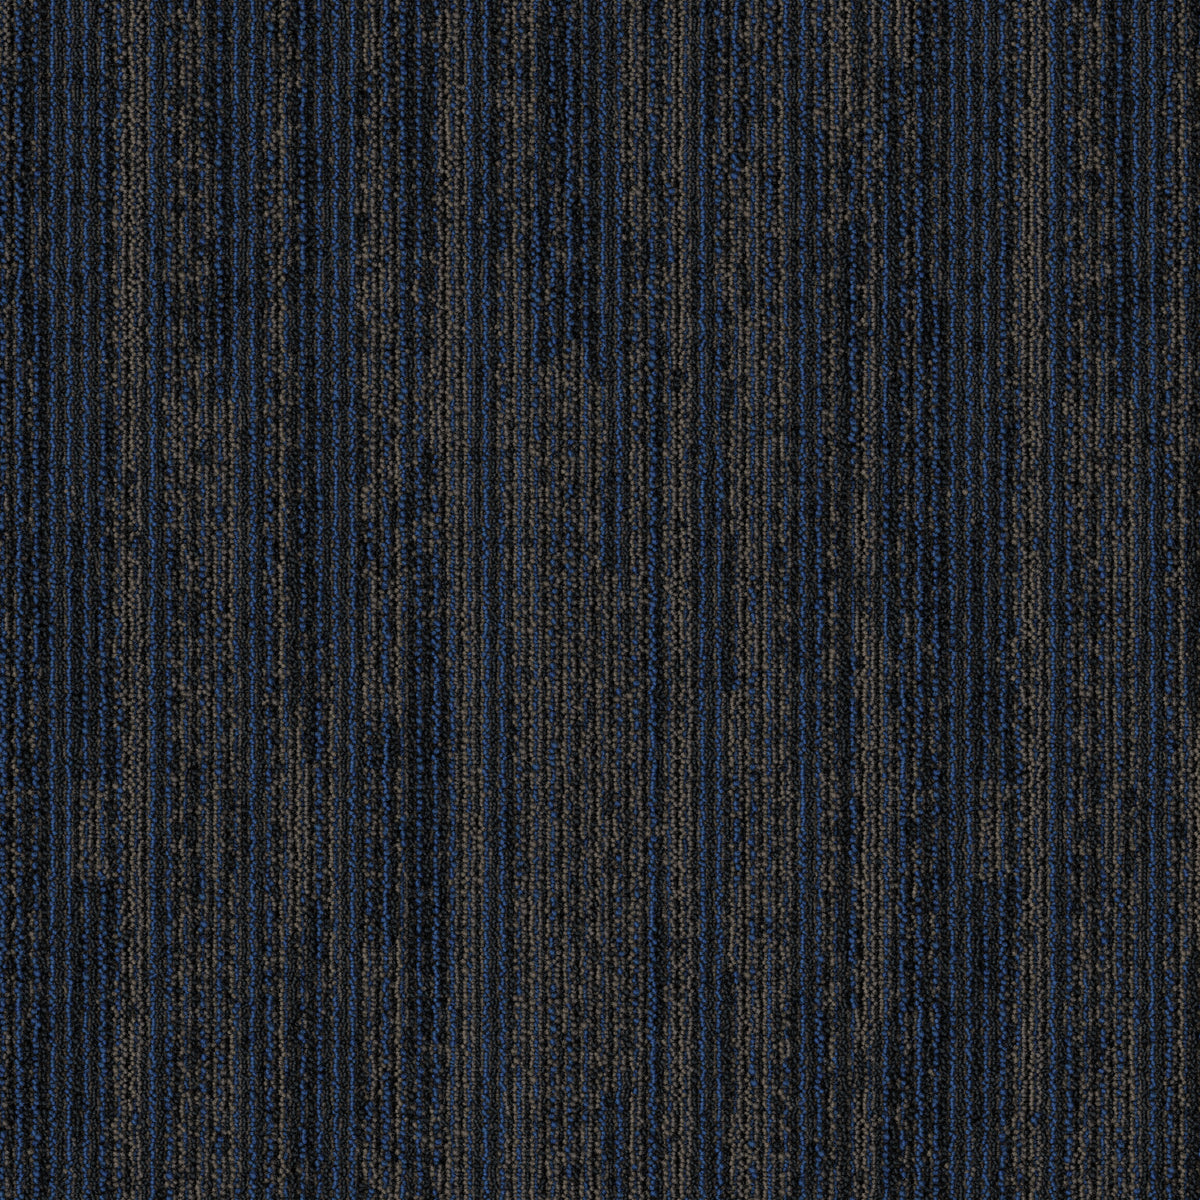 Mohawk Group - Artisanal - Blended Twist - Carpet Tile - Twilight